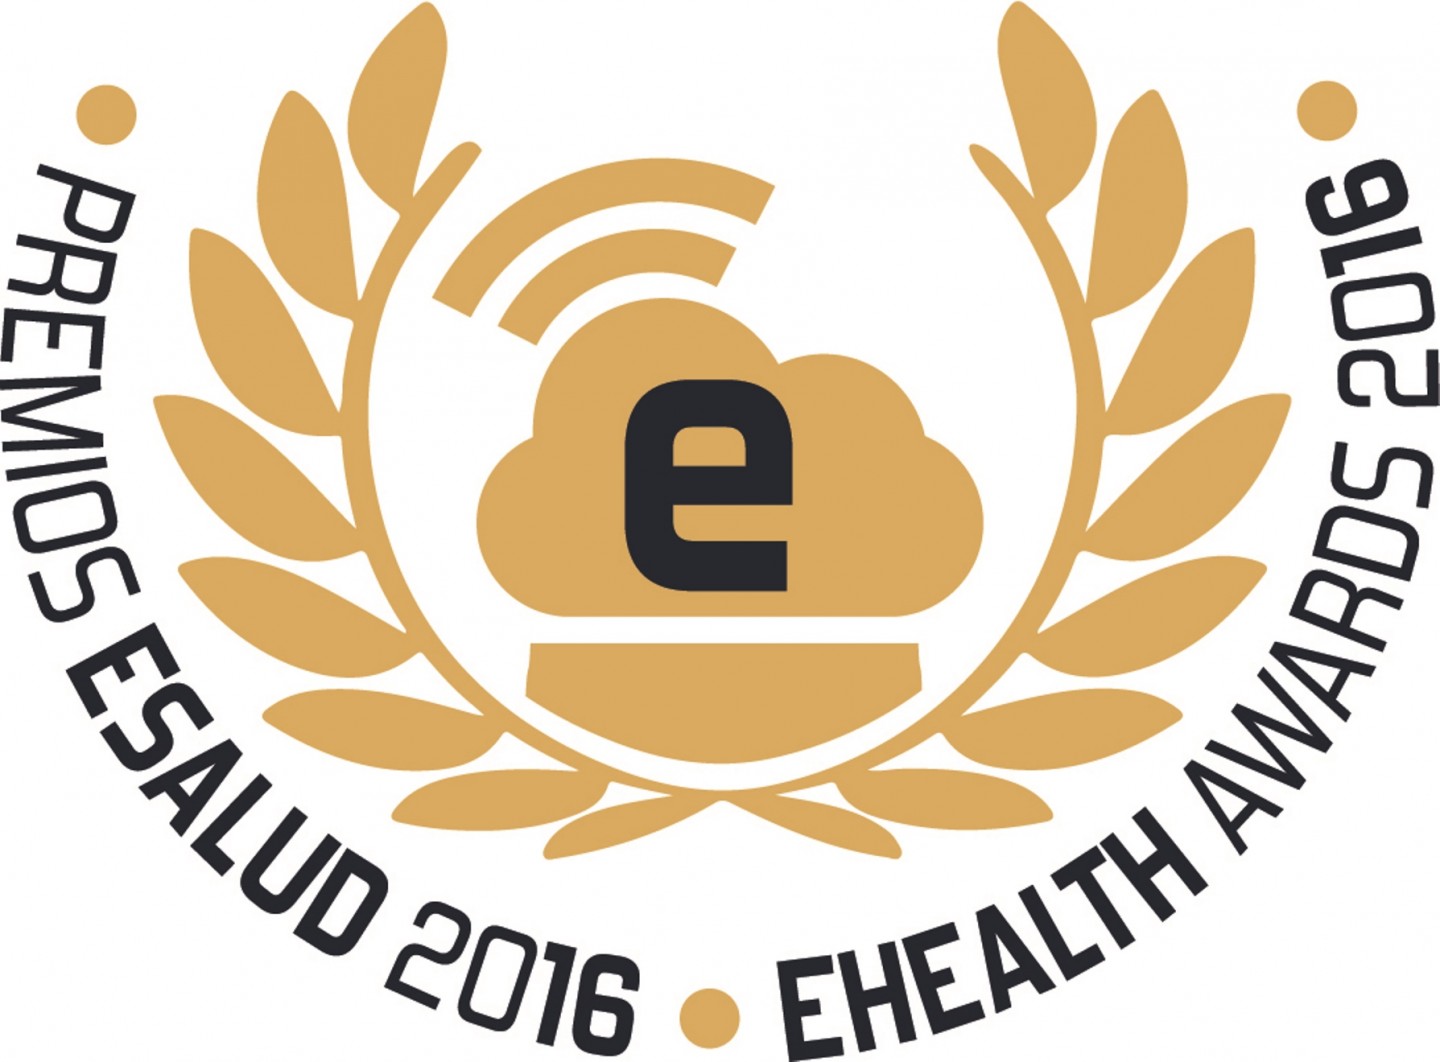 Convocados los Premios eSalud 2016 a las mejores iniciativas en tecnologías aplicadas a la salud